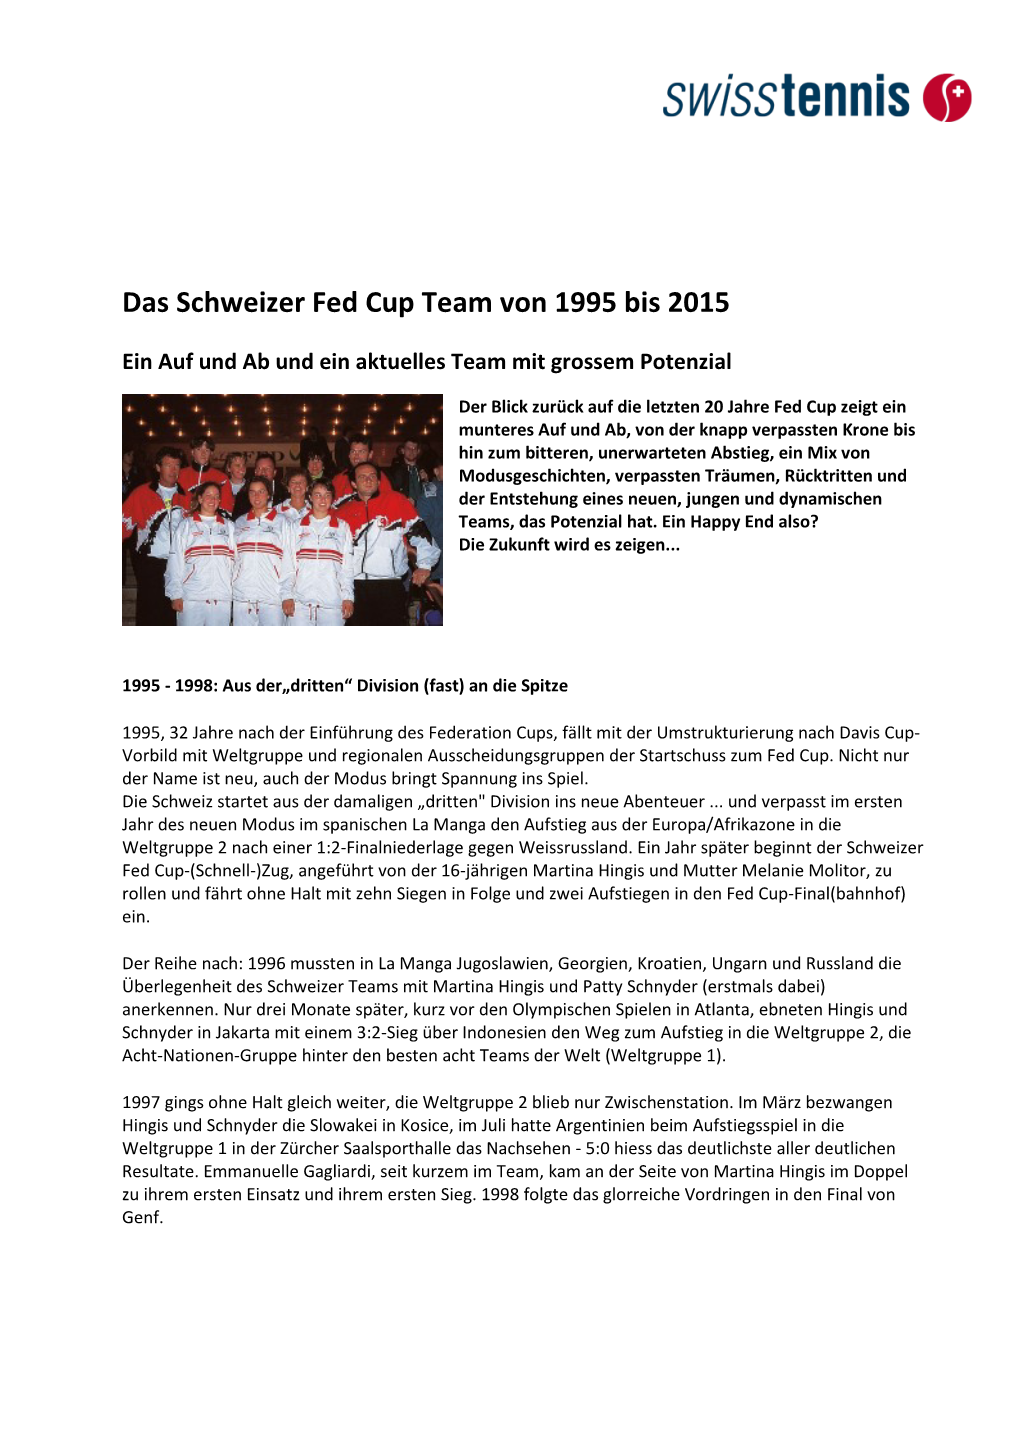 Das Schweizer Fed Cup Team Von 1995 Bis 2015